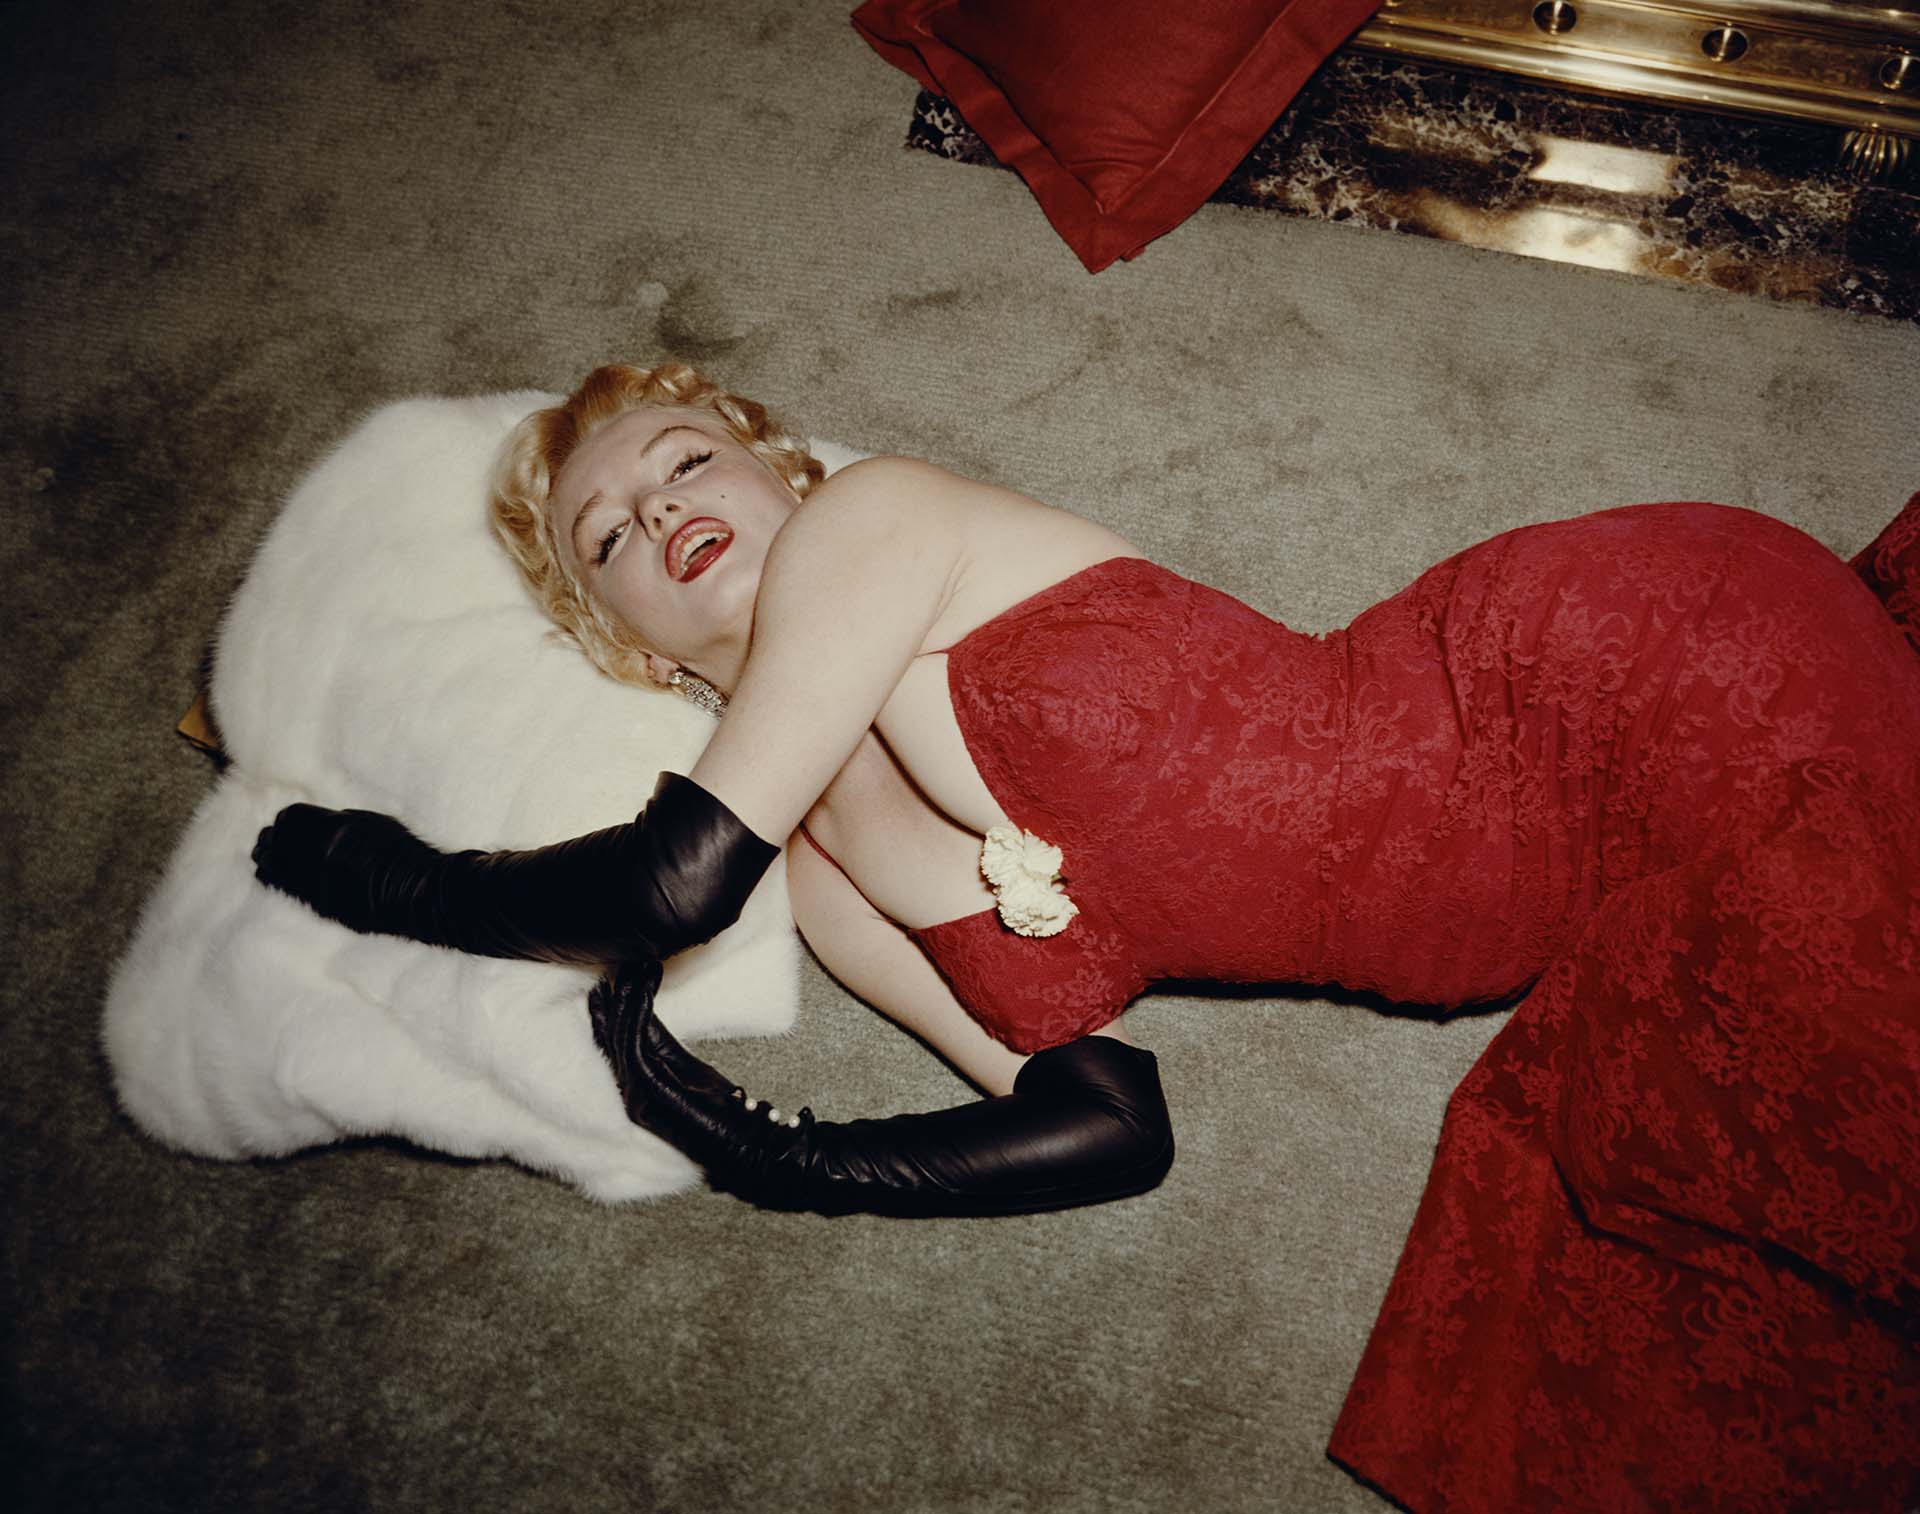 La muerte de Marilyn fue objeto de controversias desde el momento en que ocurrió. ¿Suicidio, sobredosis accidental o asesinato? Con el correr de los años, las teorías conspirativas sólo crecieron  (Photo by Gene Lester/Getty Images)